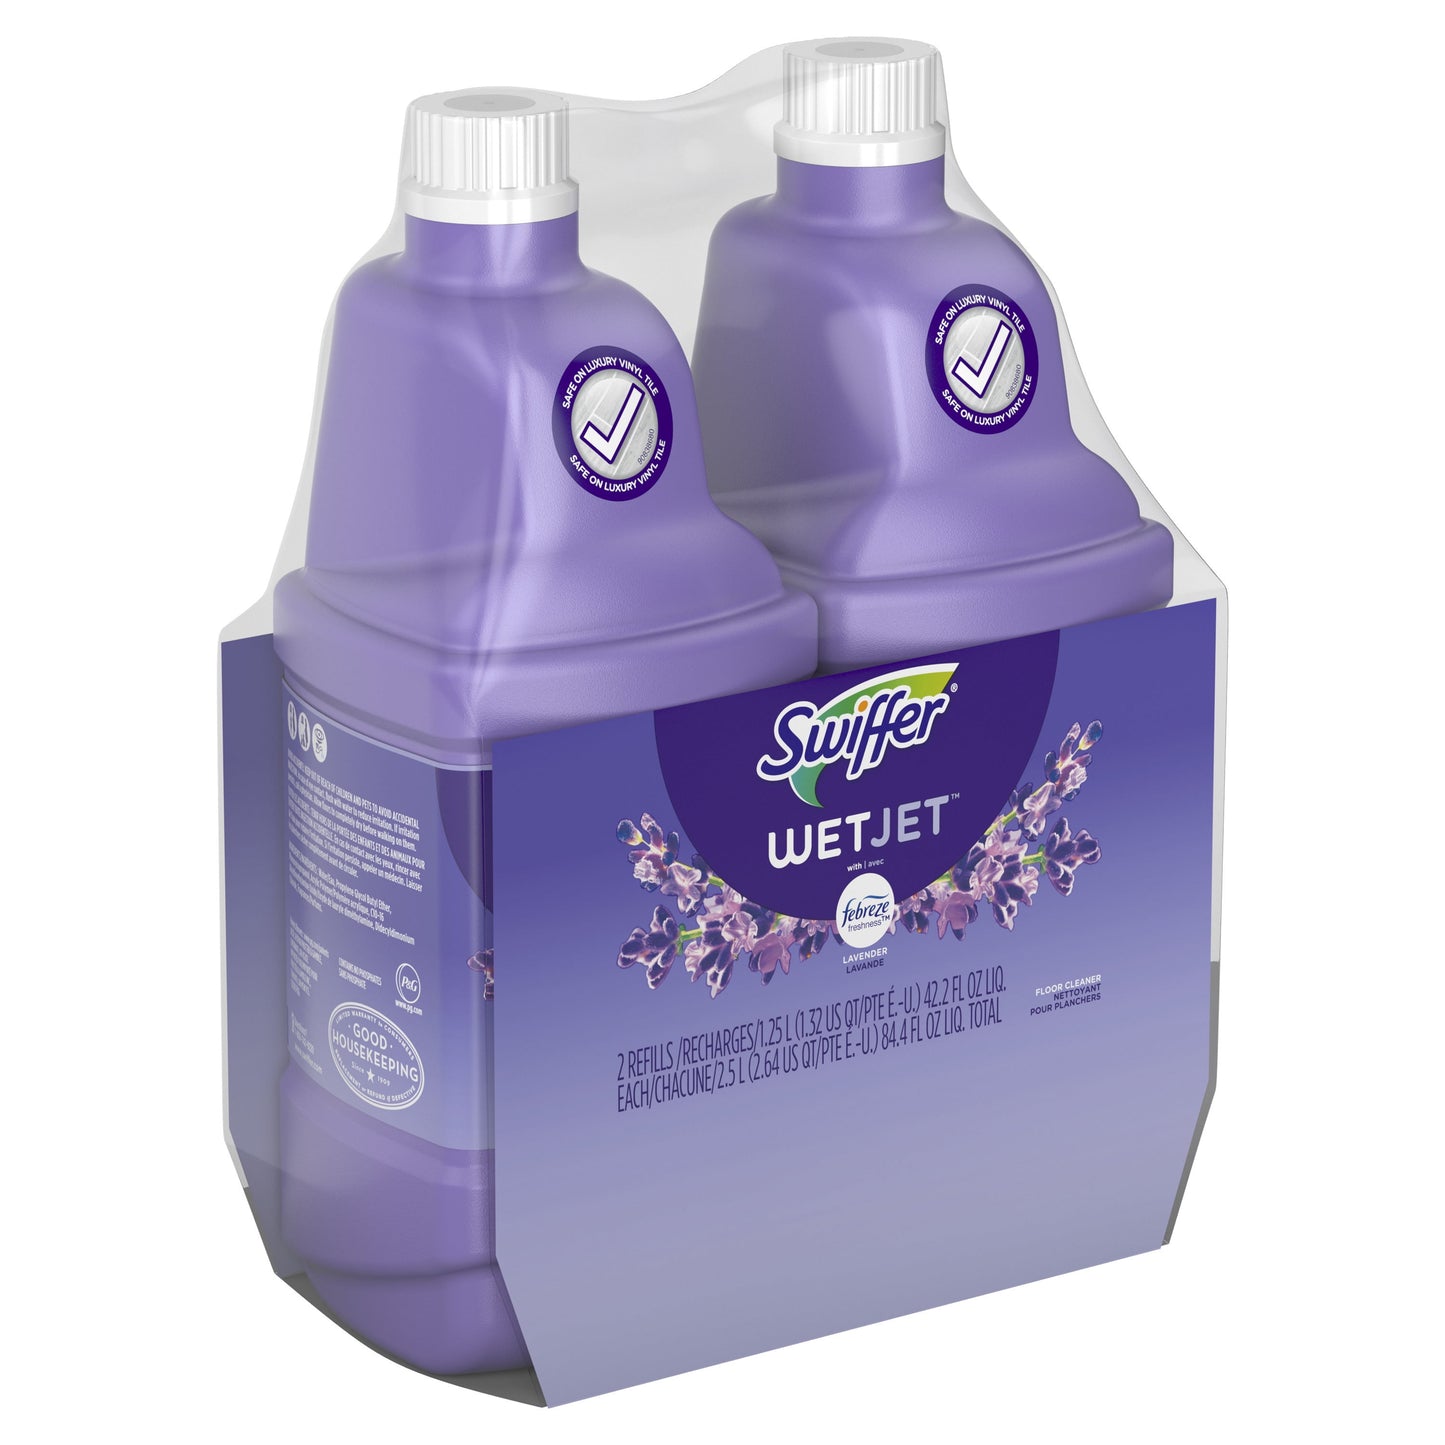 Swiffer WetJet Liquid Floor Cleaner, Lavender Vanilla & Comfort, 1.25 Liter (2 Pack)